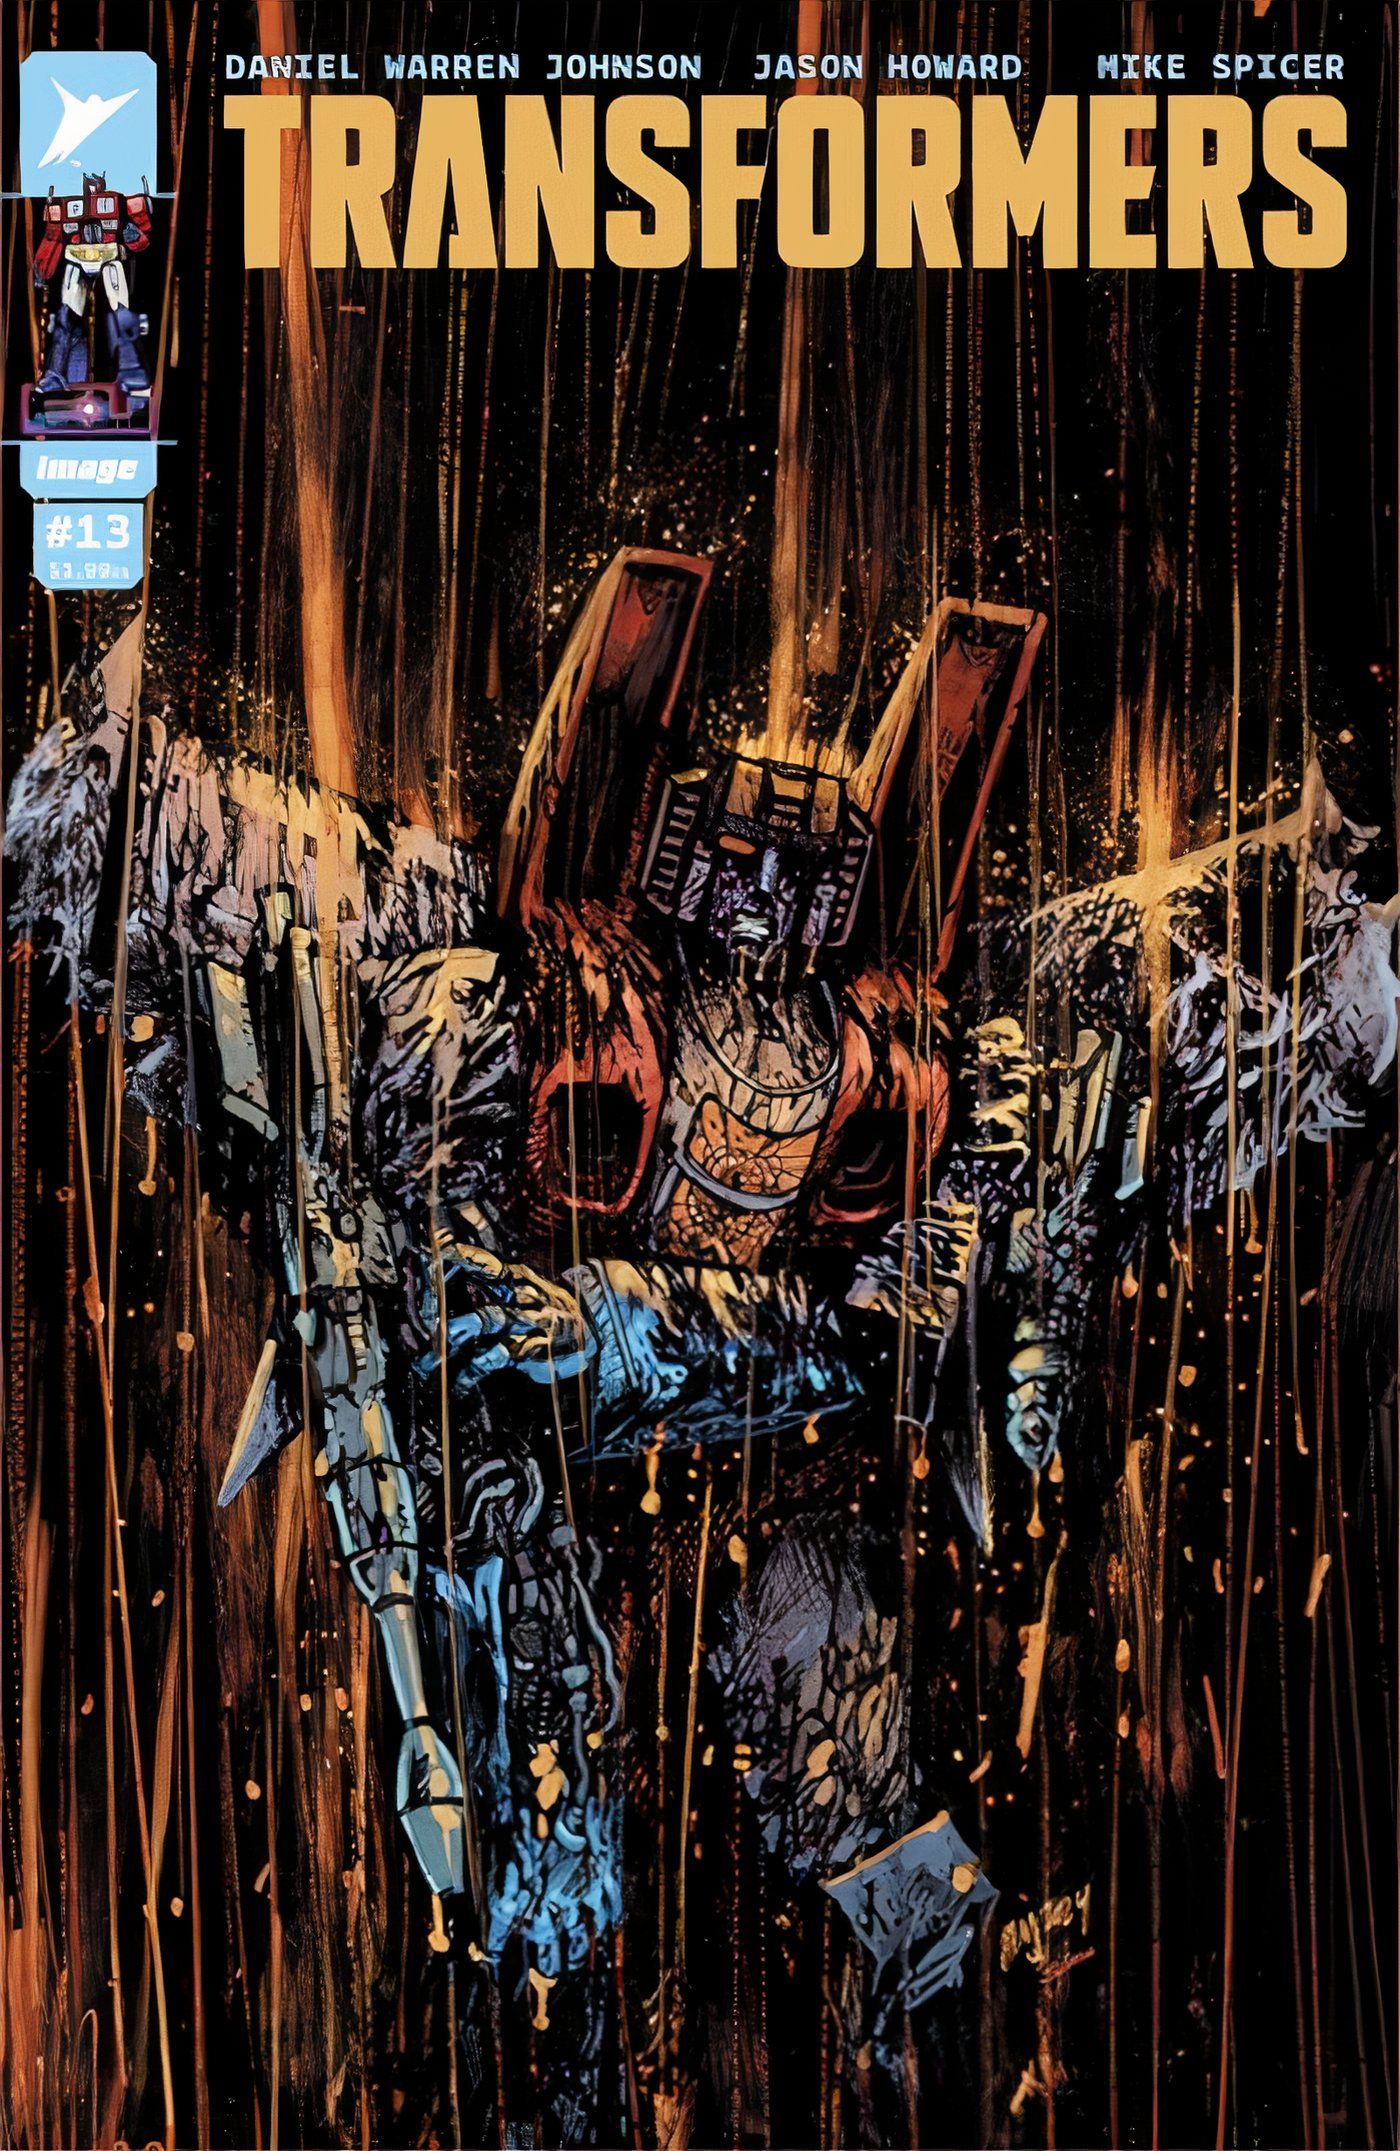 Transformers #13 Cover Um Starscream danificado pela batalha na chuva